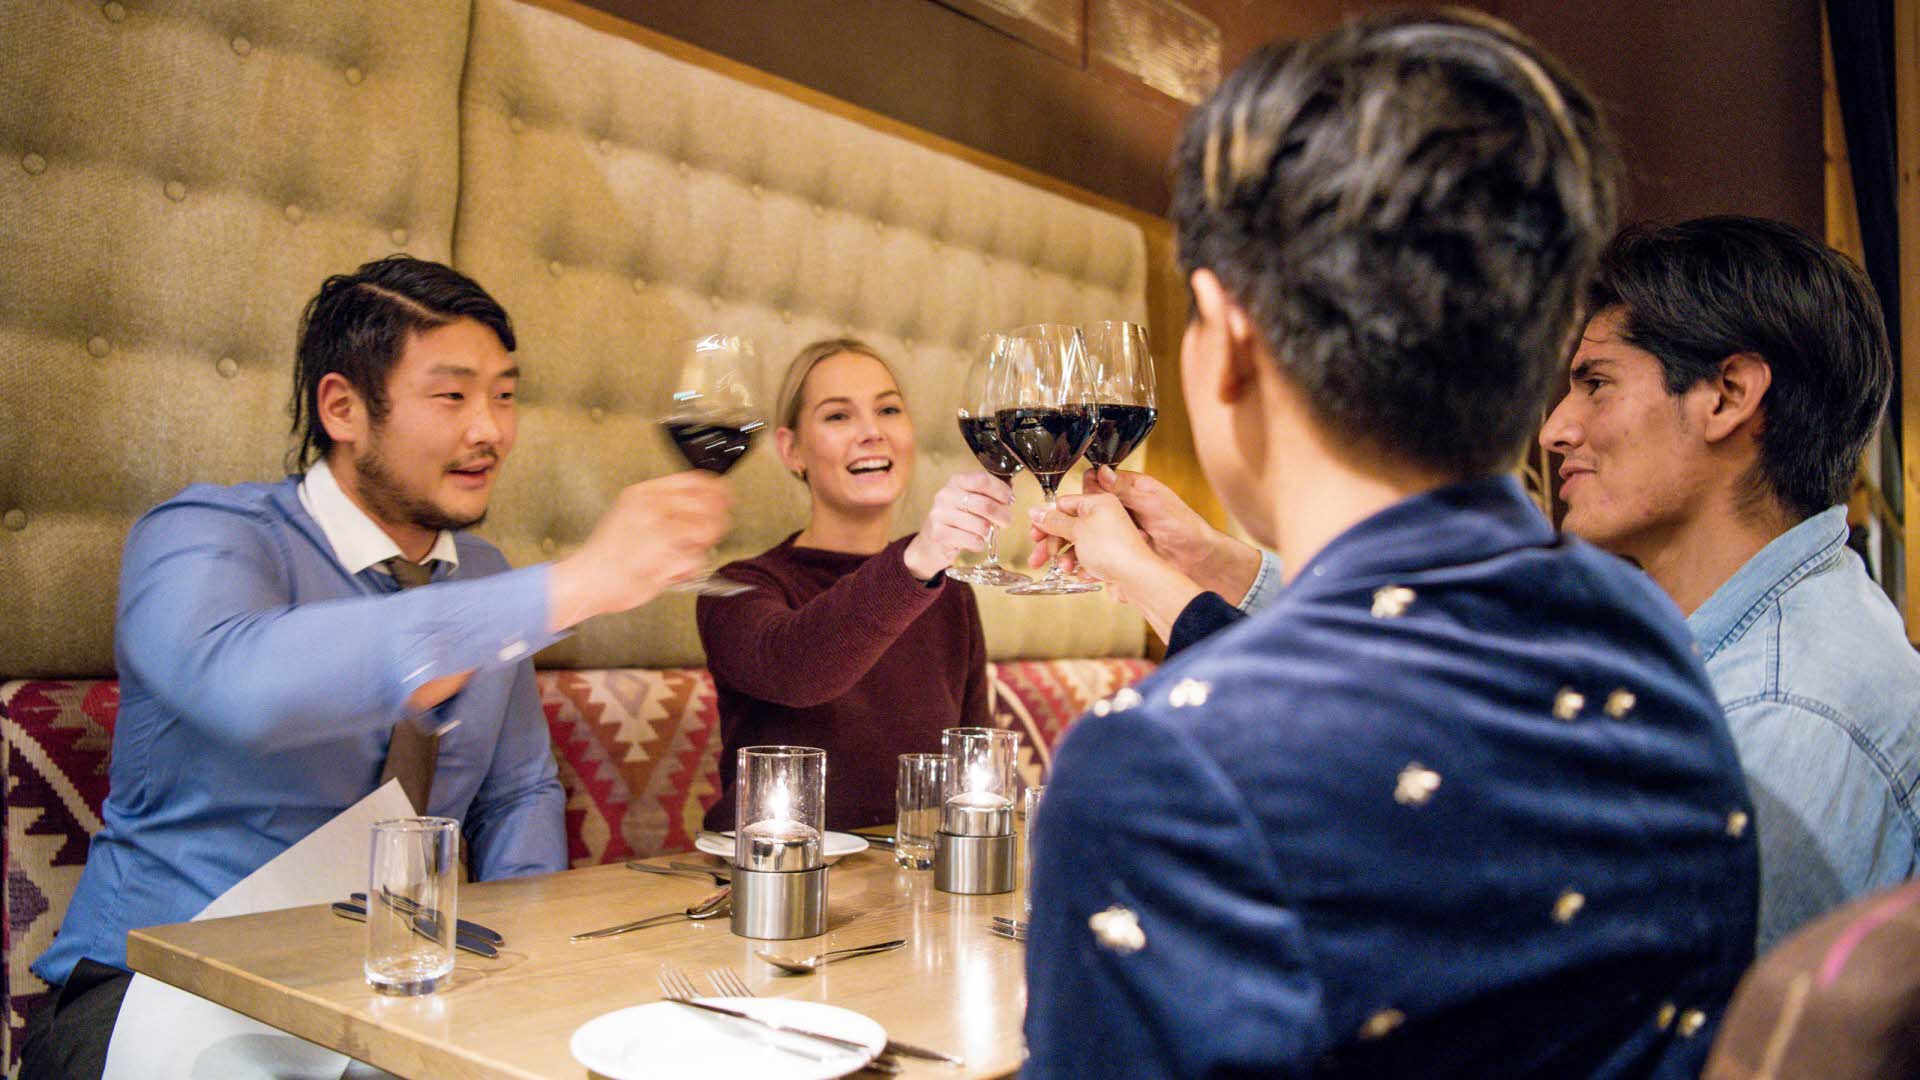 四个人围坐在阿尔文餐厅桌前欢笑着举杯相庆